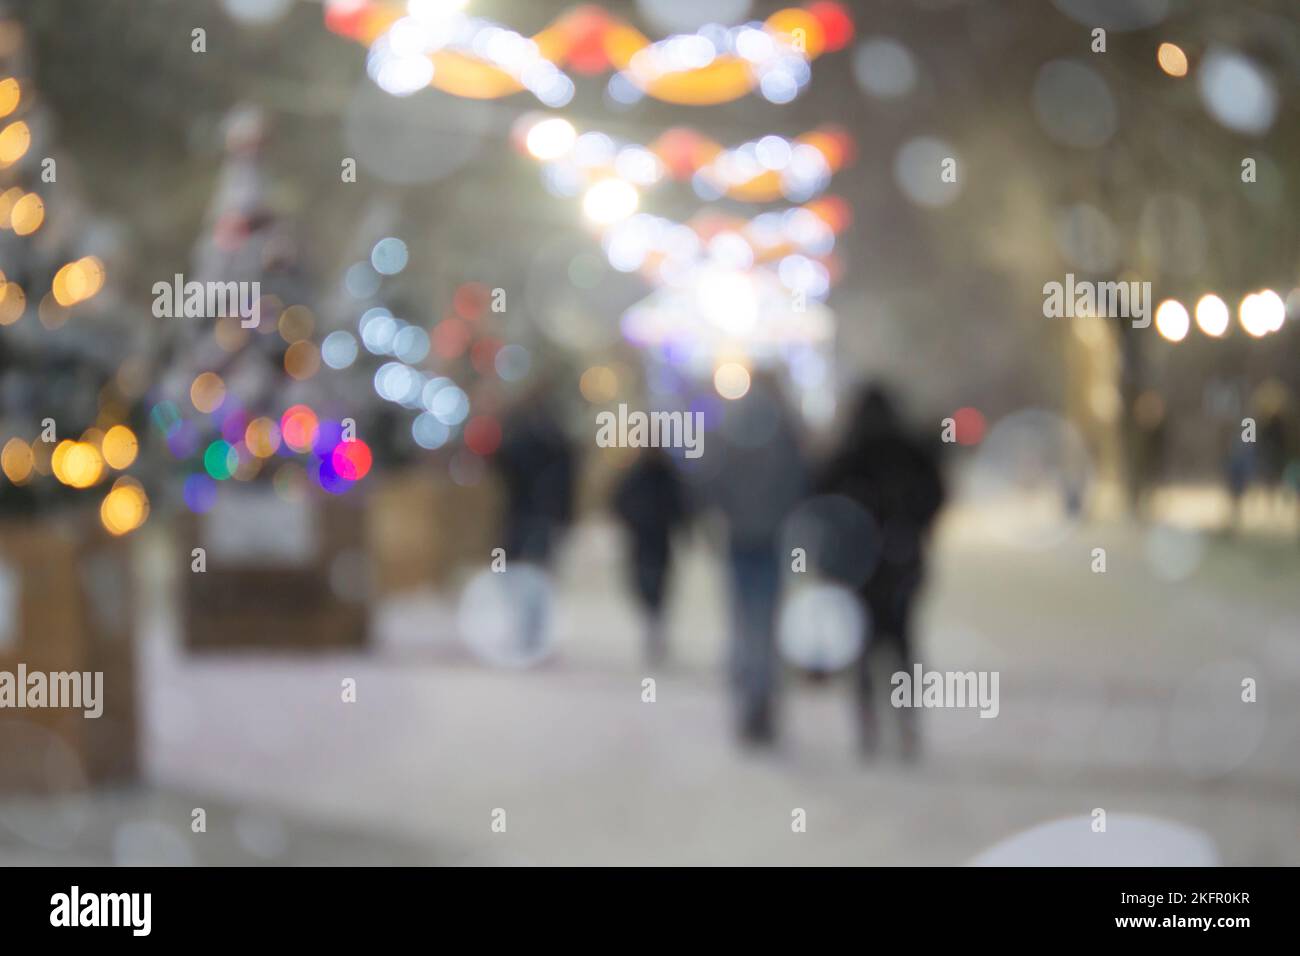 Résumé arrière-plan flou. Personnes marchant dans la rue d'arbres de Noël décorés décorés avec éclairage lumineux, lumières lumineuses et guirlandes dans la ville pendant de fortes chutes de neige la nuit d'hiver Banque D'Images